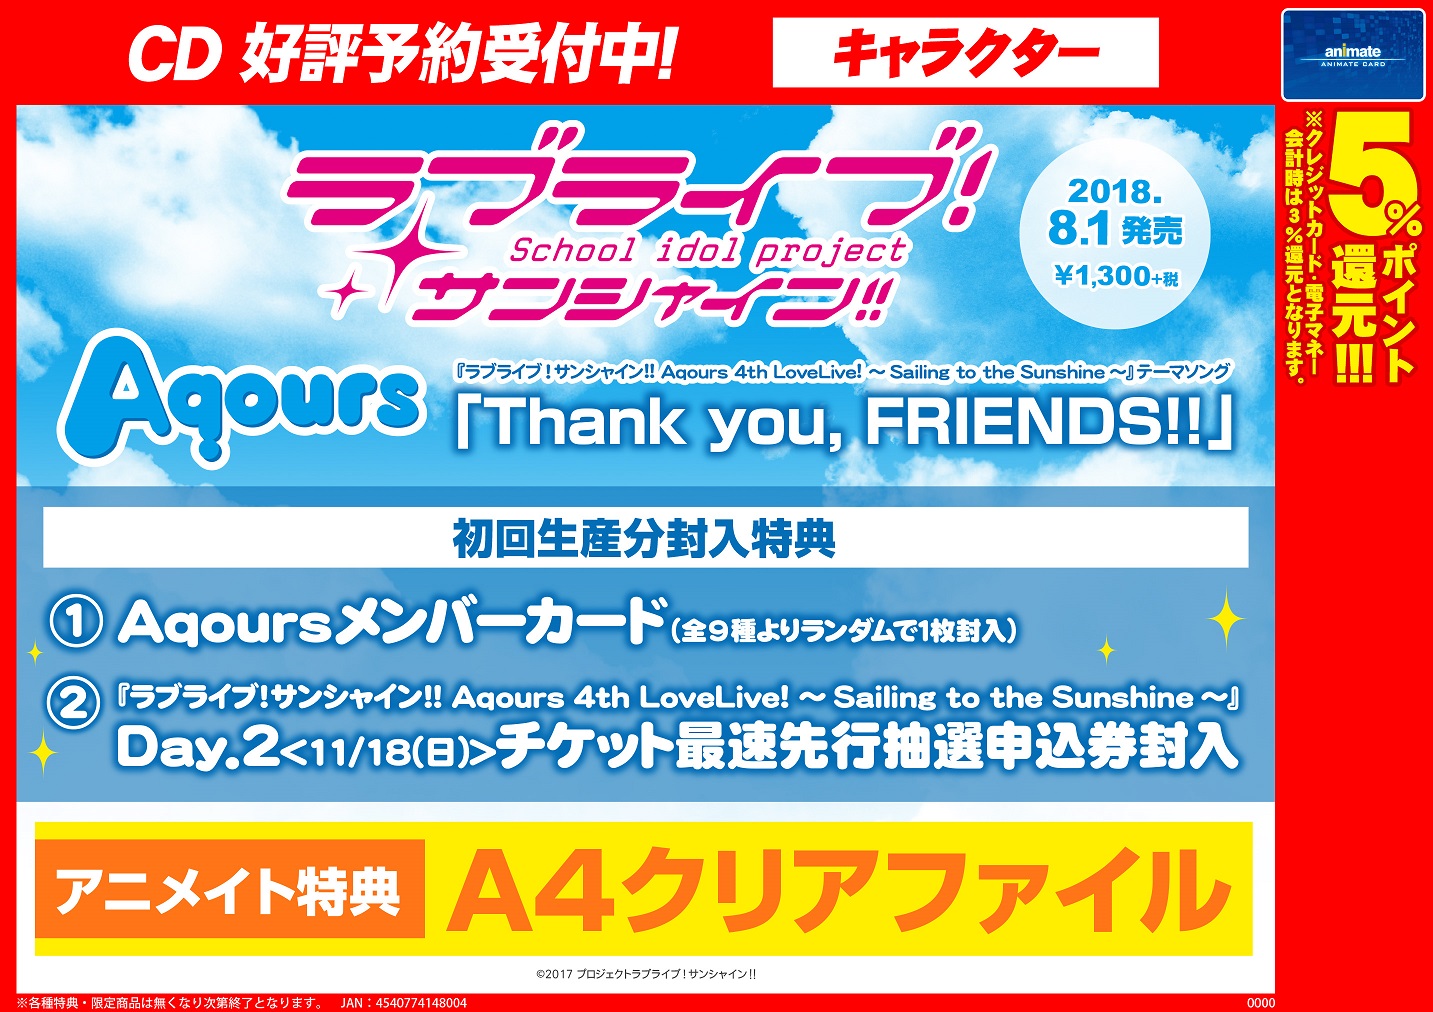 ラブライブ サンシャイン Aqours ニューシングル Thank You Friends 8 1 発売 アニメイト沼津